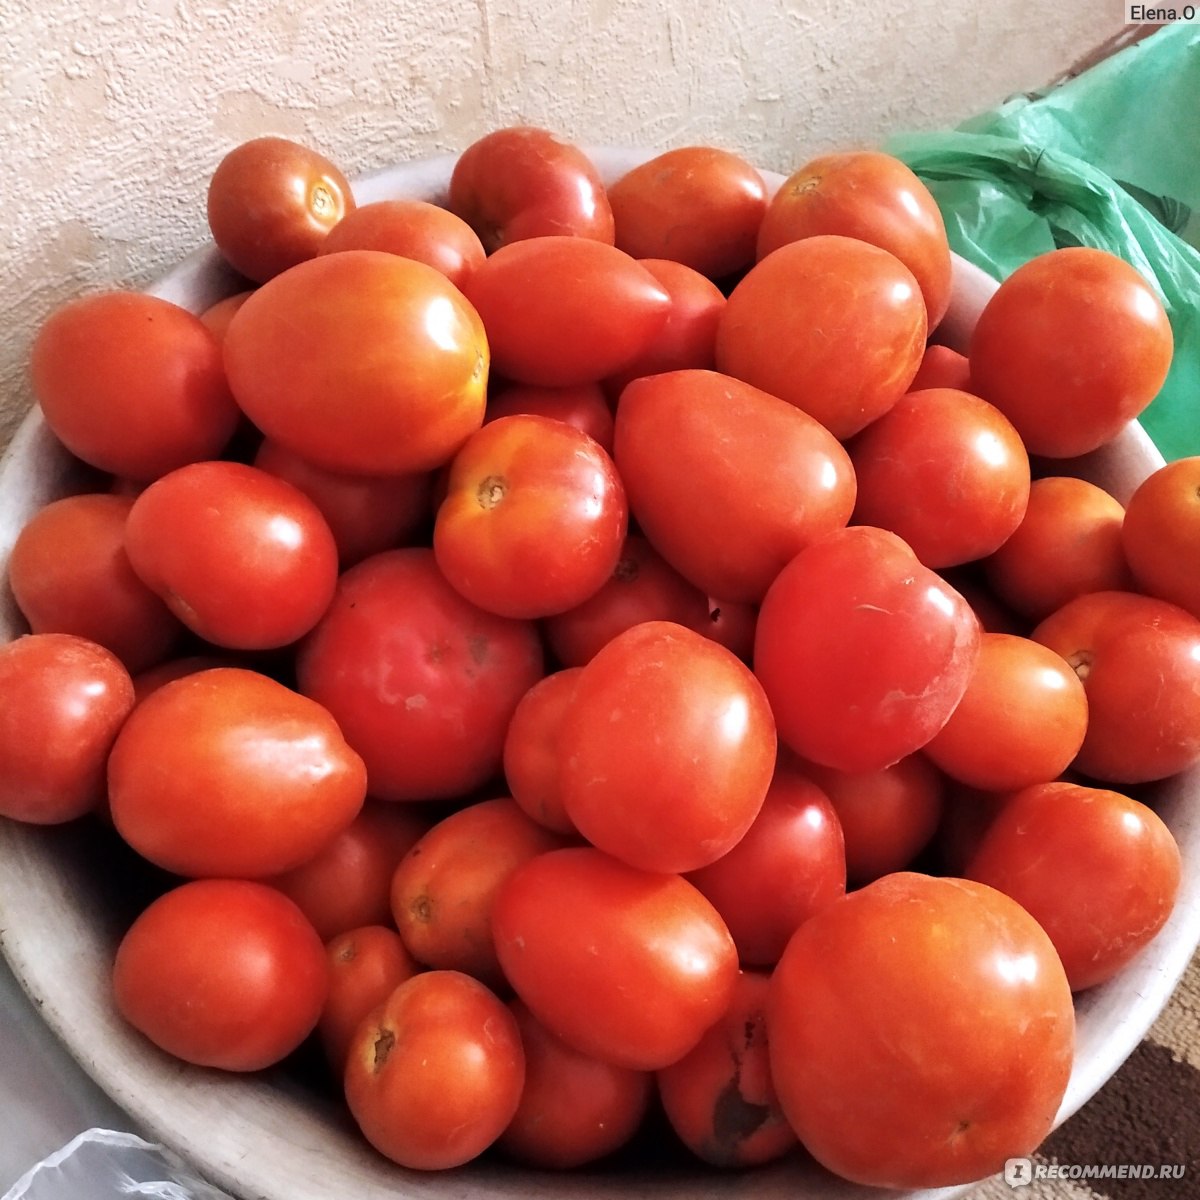 Сорт томатов оля f1